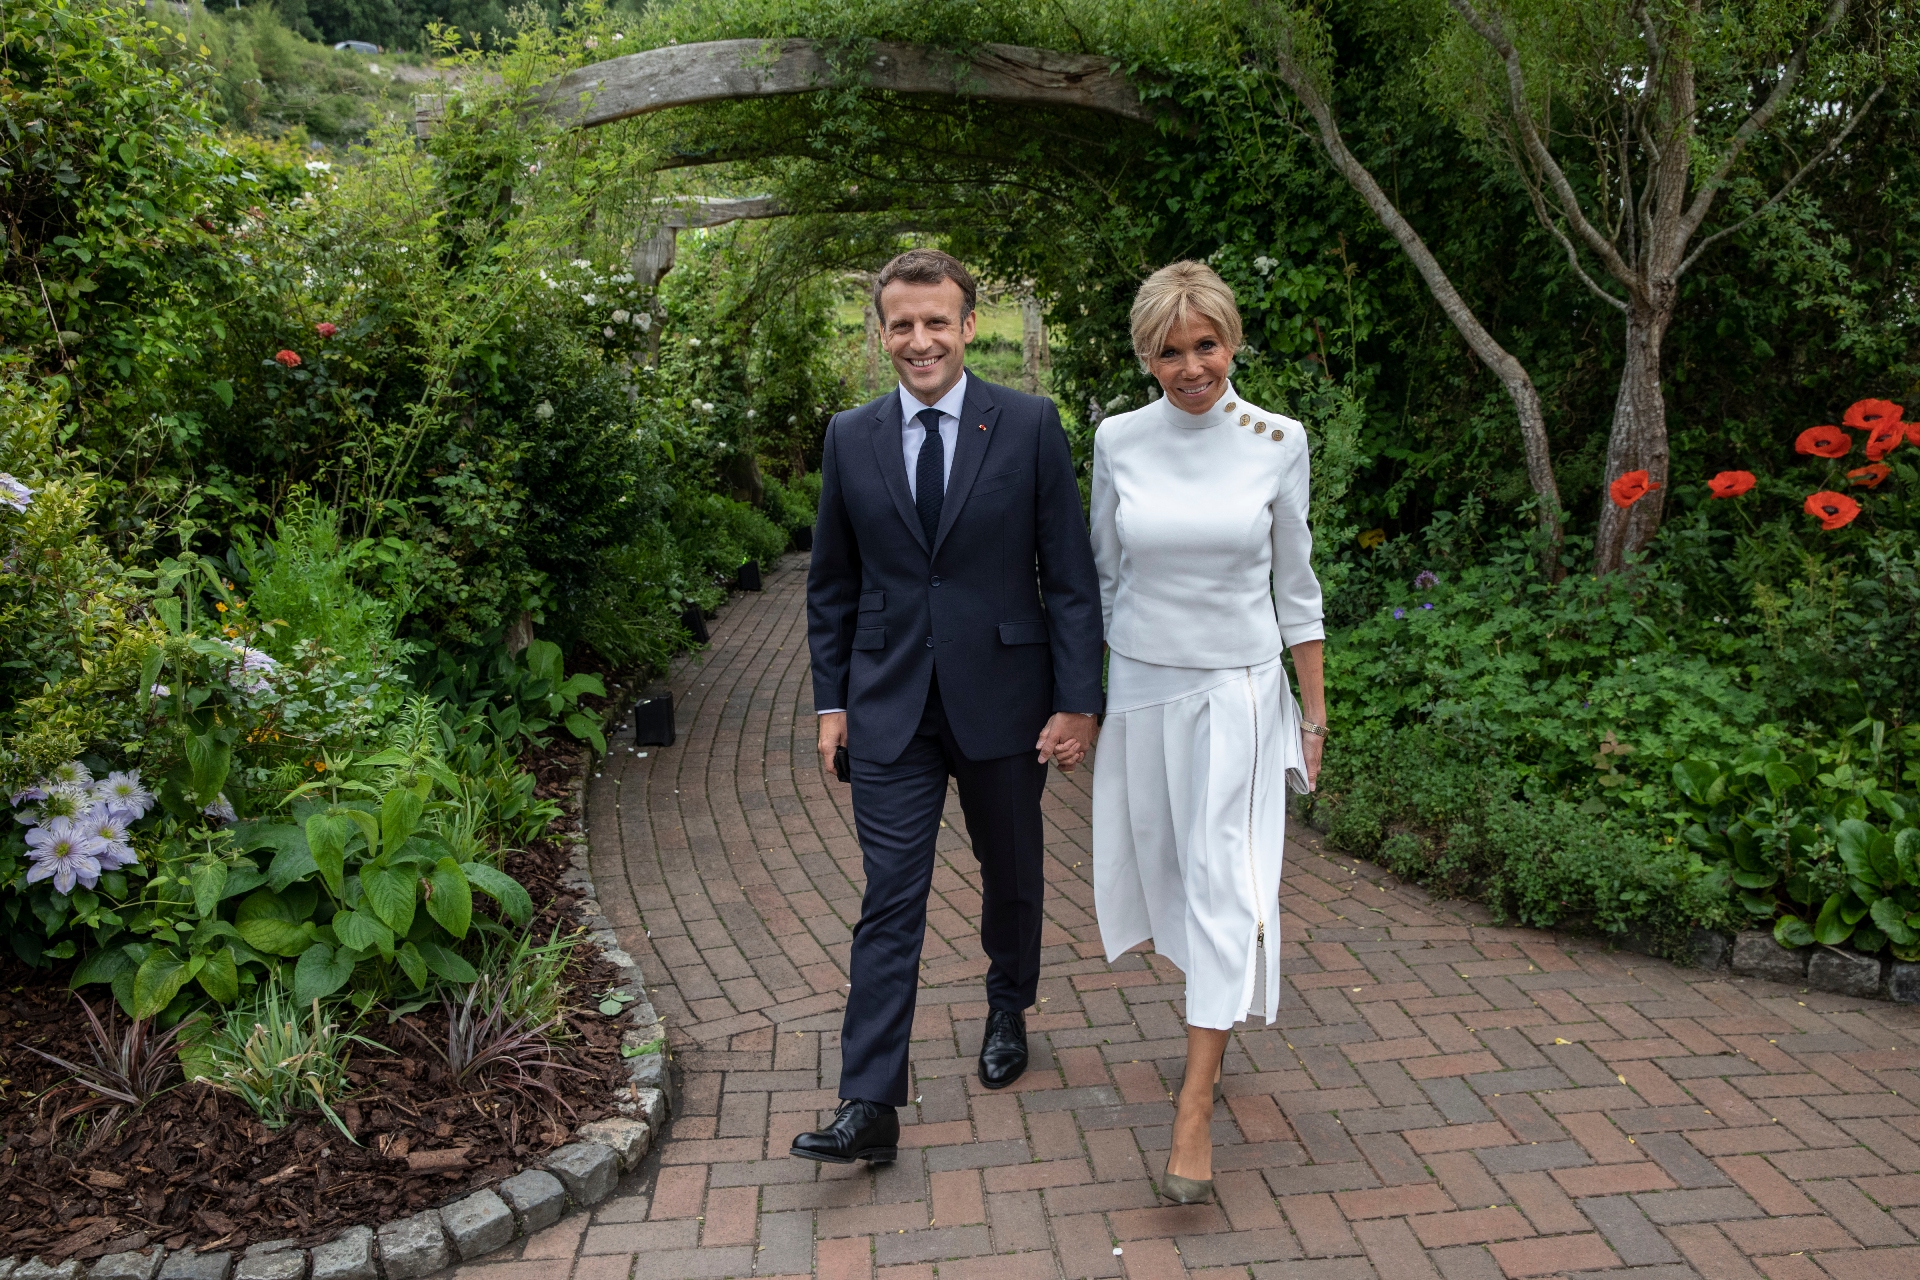 Брижит Макрон на приеме в ботаническом саду Корнуолла в рамках саммита G7, 11 июня